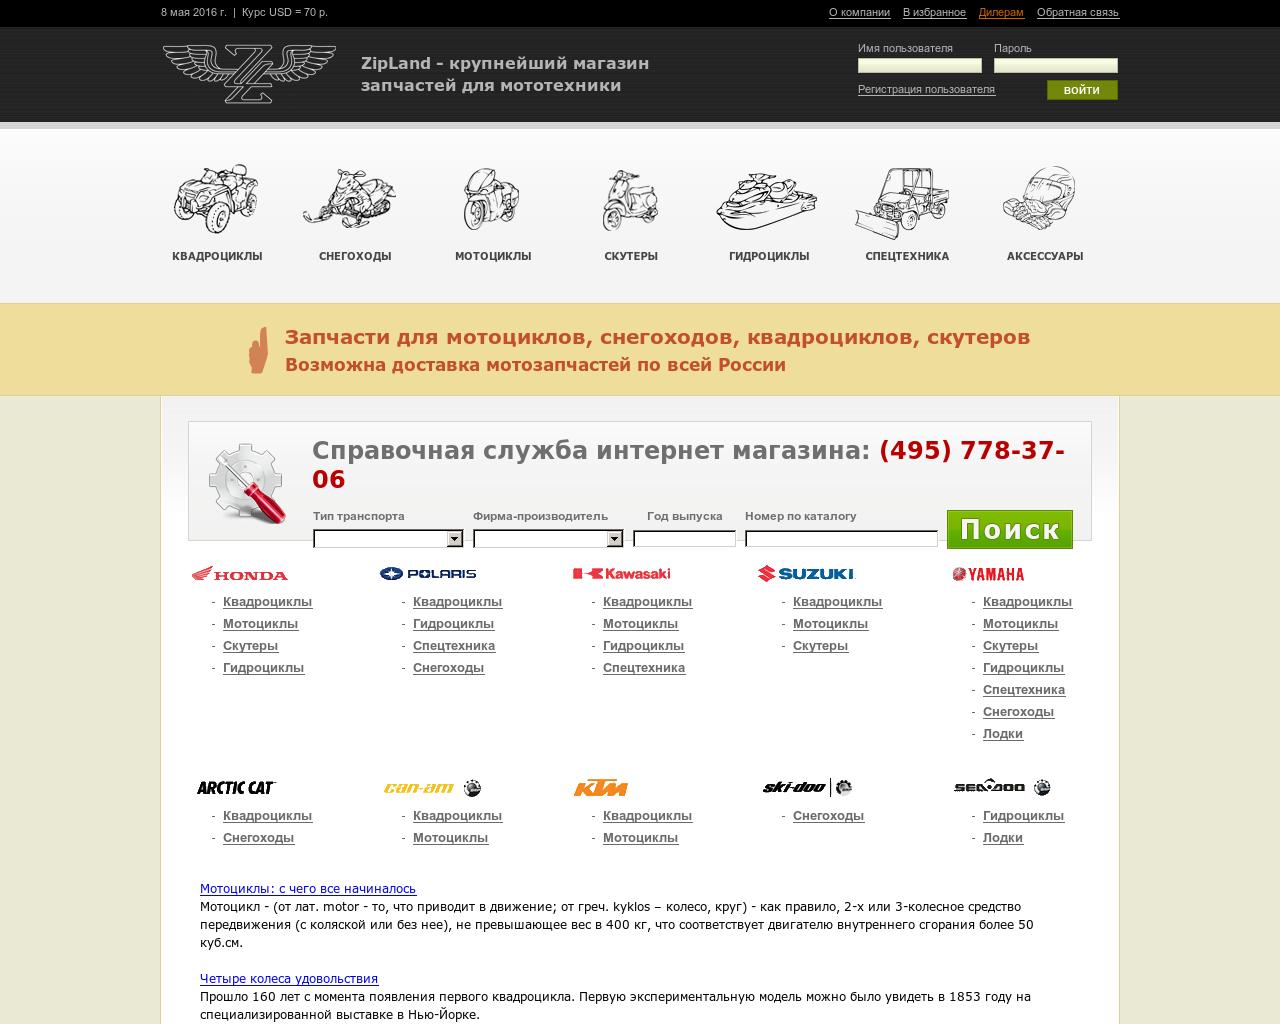 Изображение сайта zipland.ru в разрешении 1280x1024